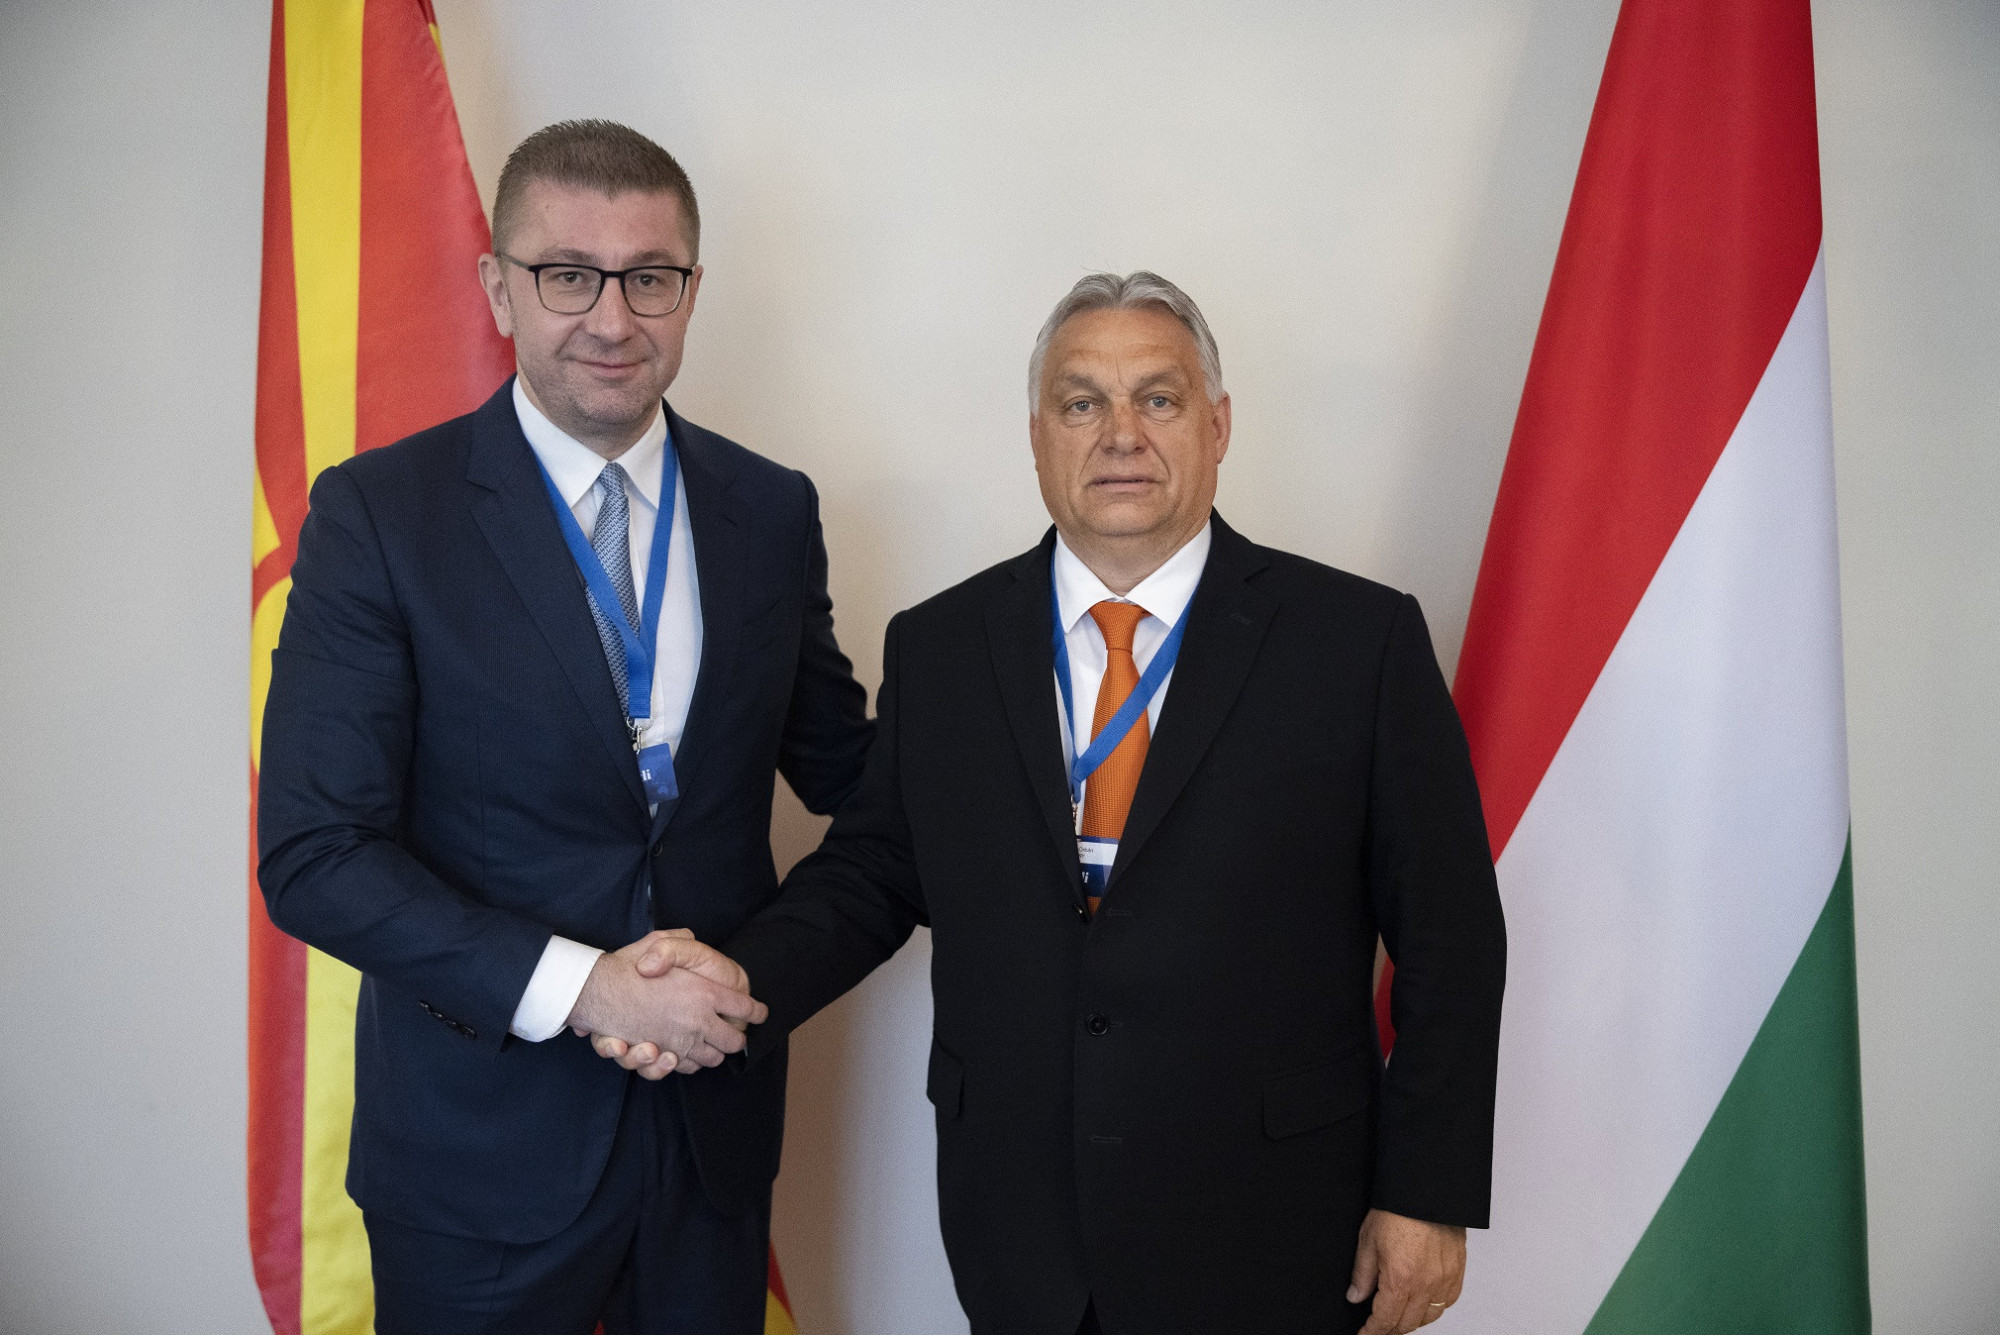 Exportálni a NER-t: észak-macedón pártnak ígért segítséget a kormányzati felkészüléshez Orbán